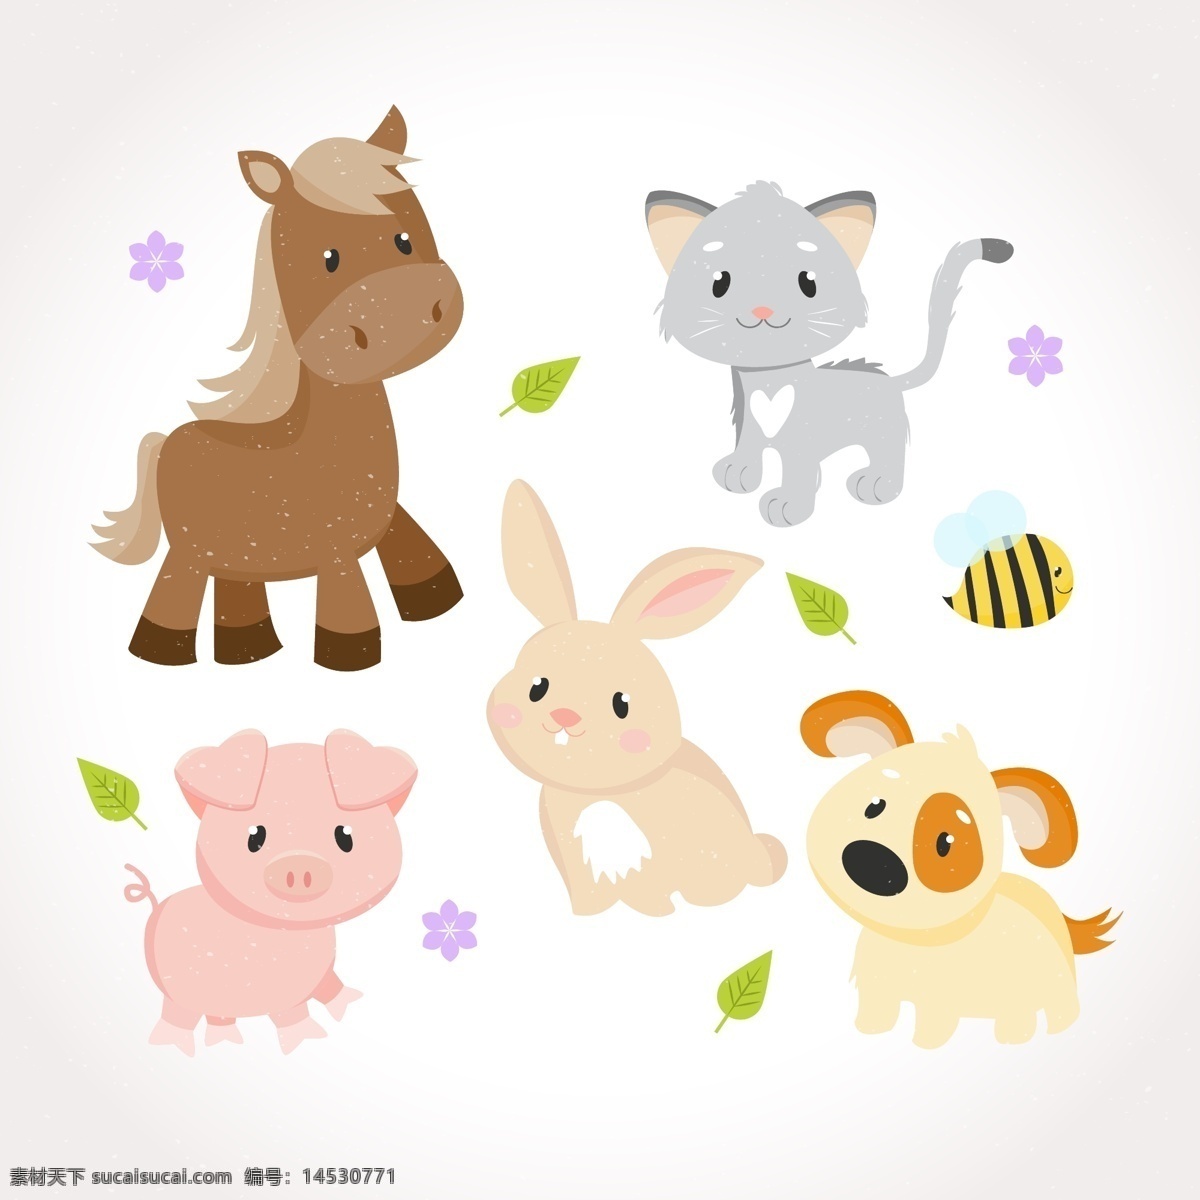 可爱 宝贝 动物 卡通 兔子 卡通动物 猪 狗 马